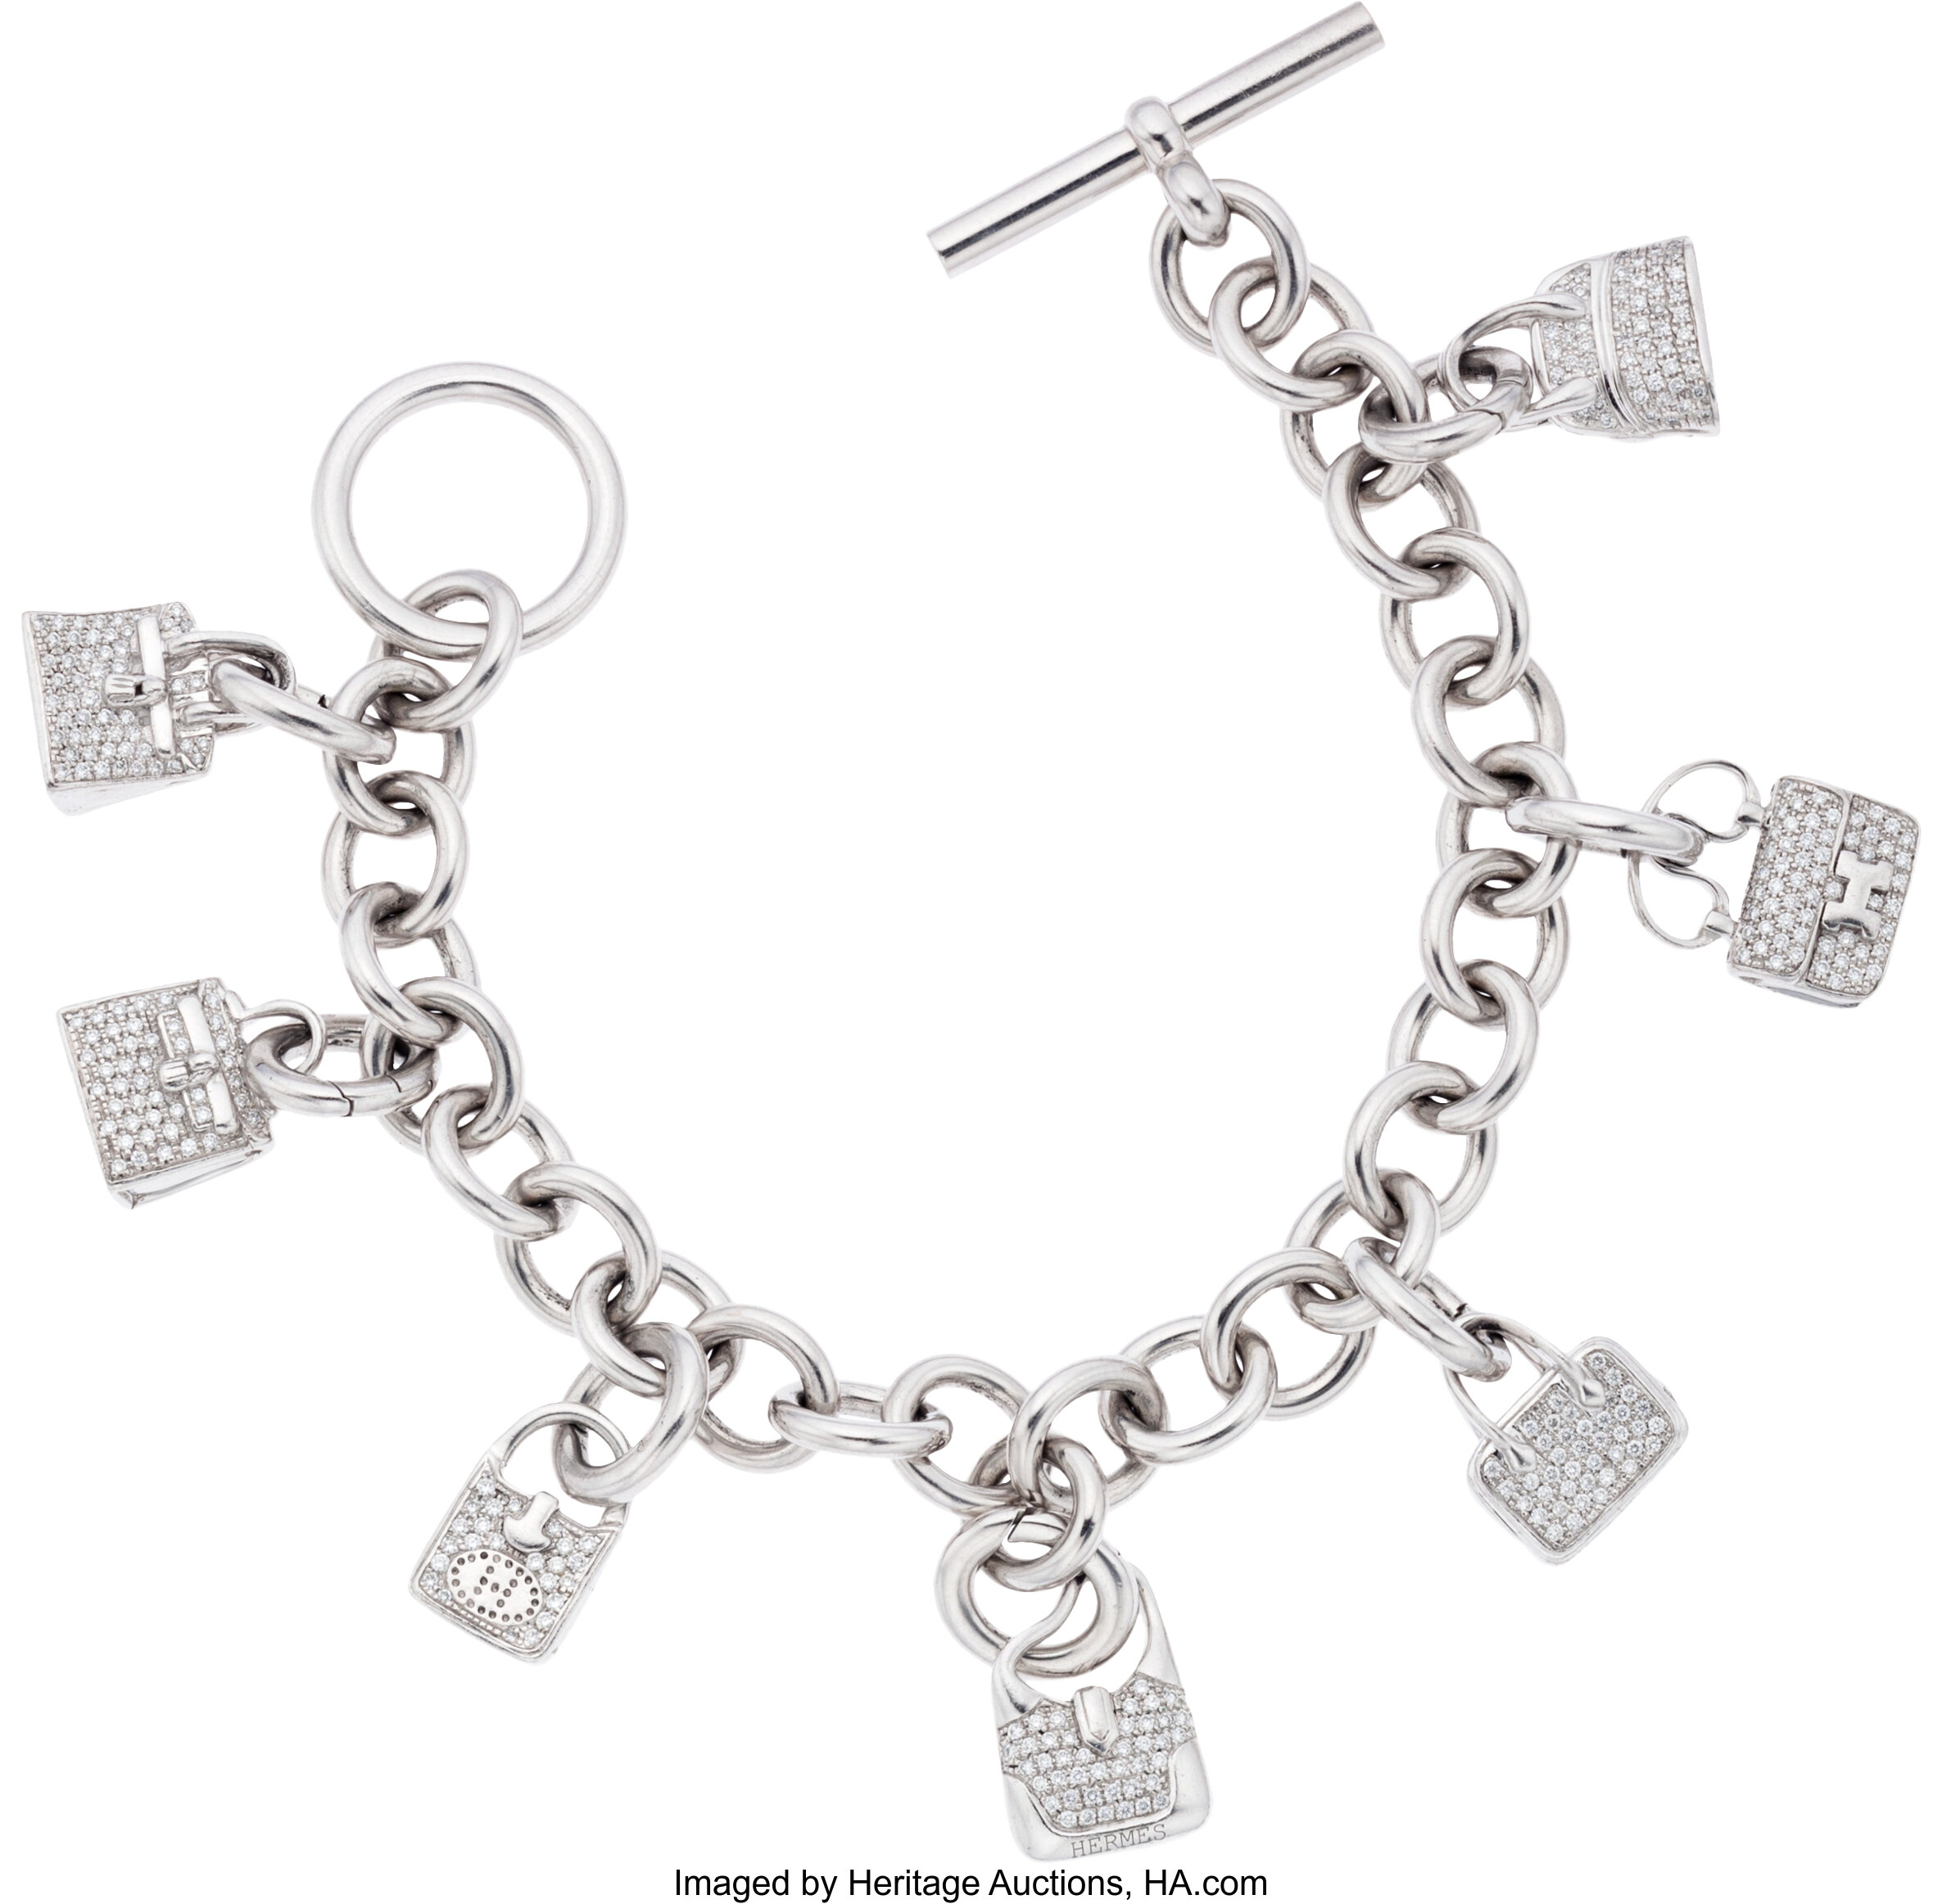 Hermes Hanging Bag Charm Bracelet, 1stdibs.com